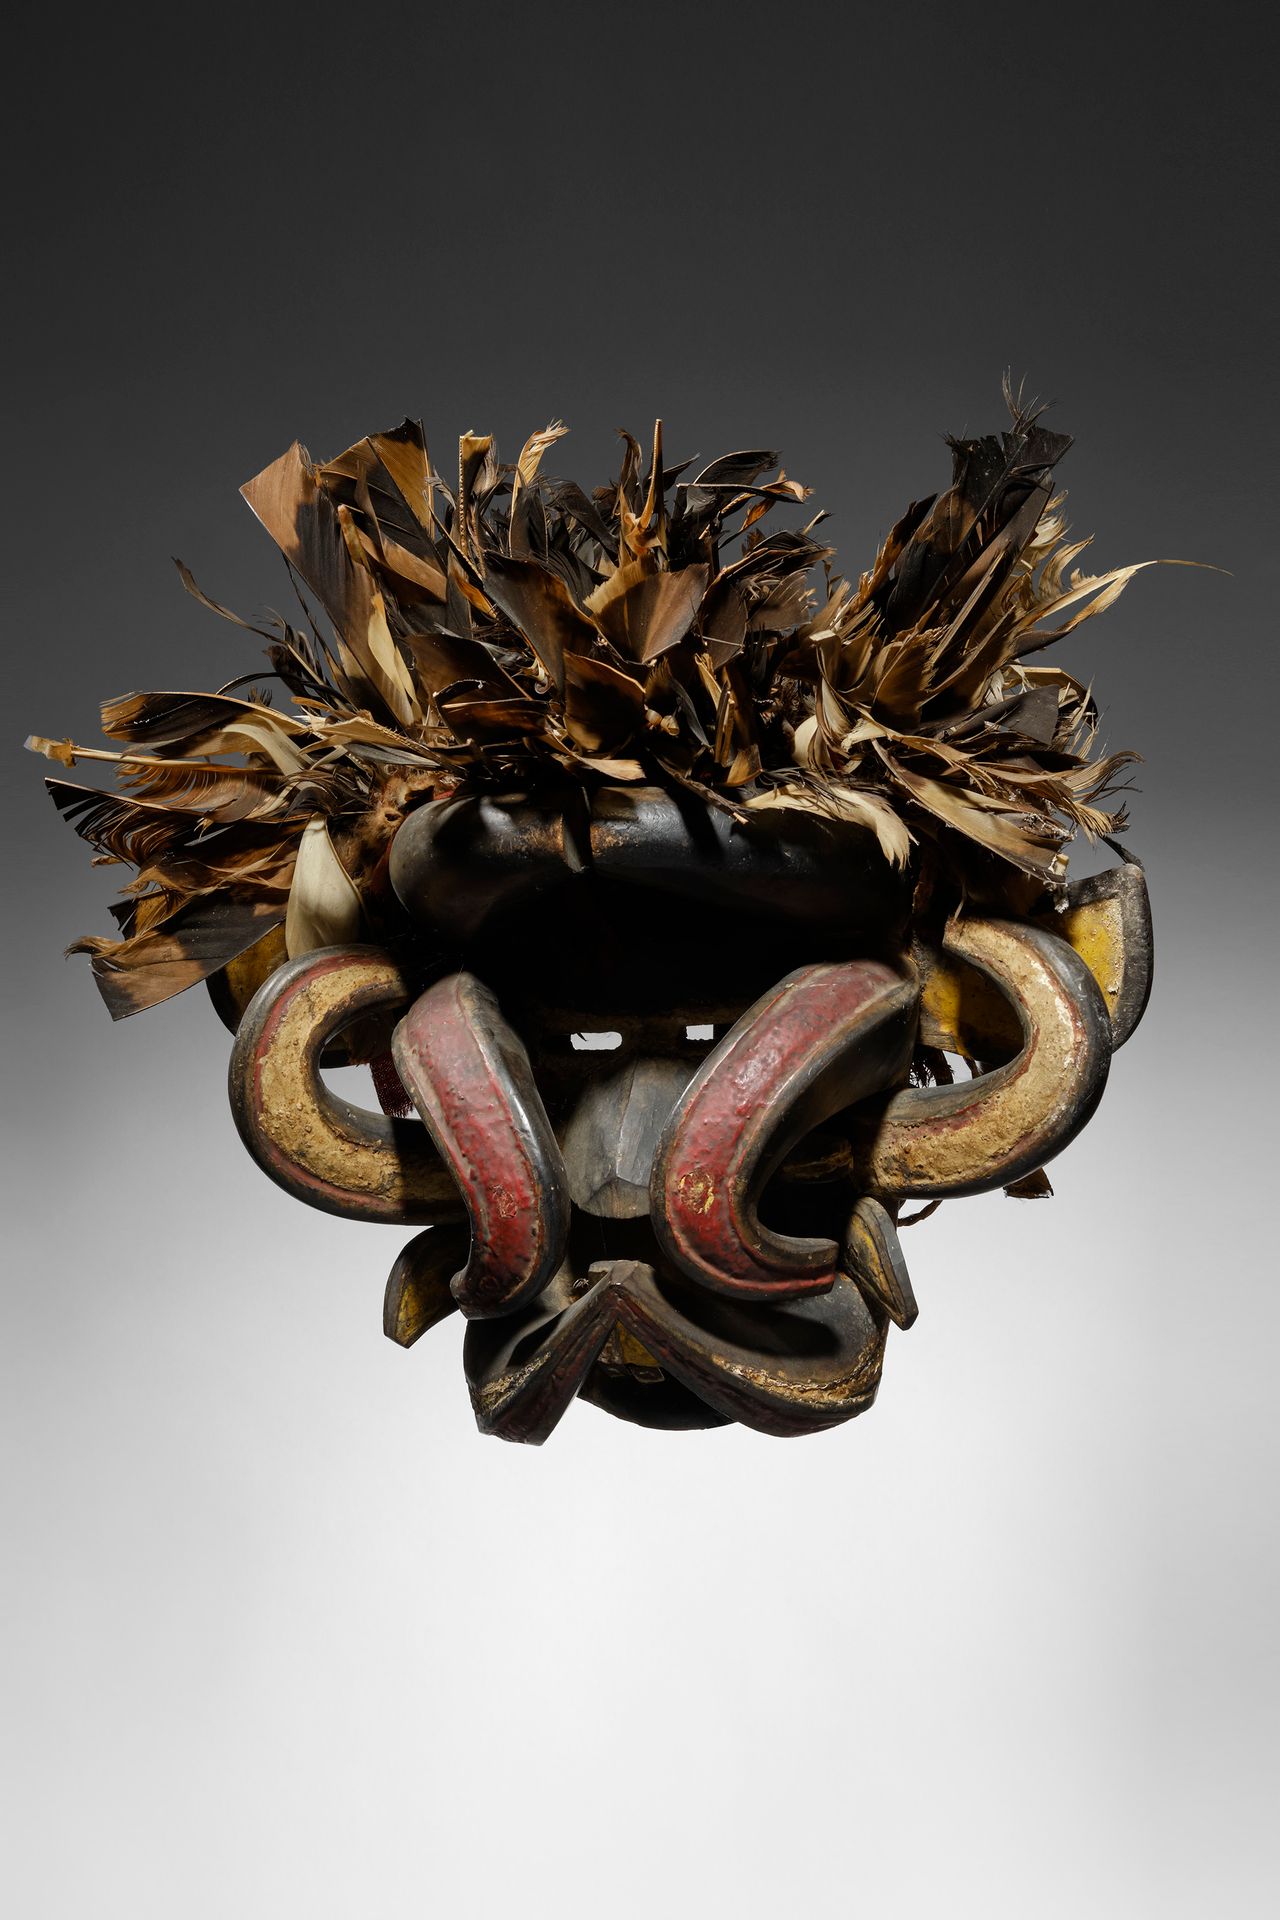 We - Guere Mask Costa d'Avorio

Legno, piume e pigmenti - 41 cm

Provenienza:

J&hellip;